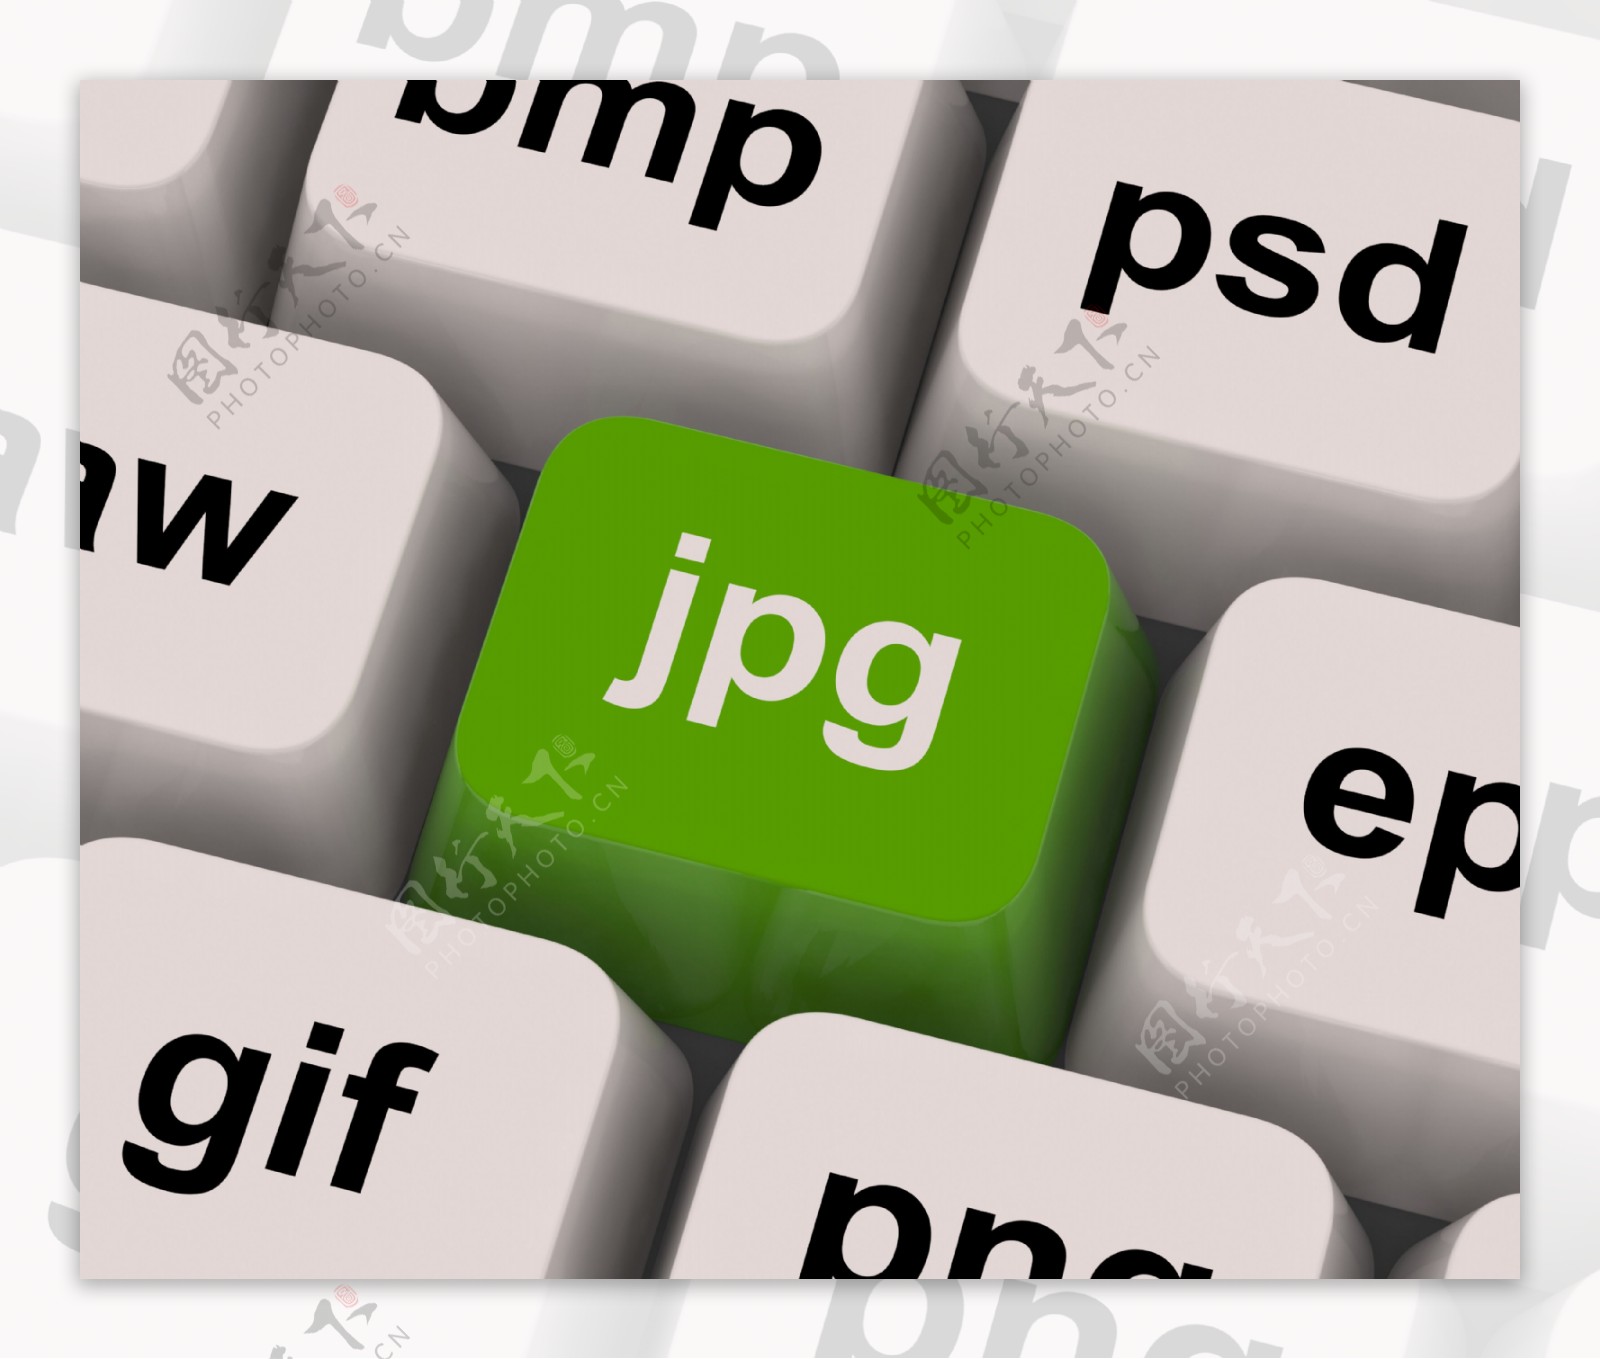 JPG图片格式的图像显示了互联网的关键